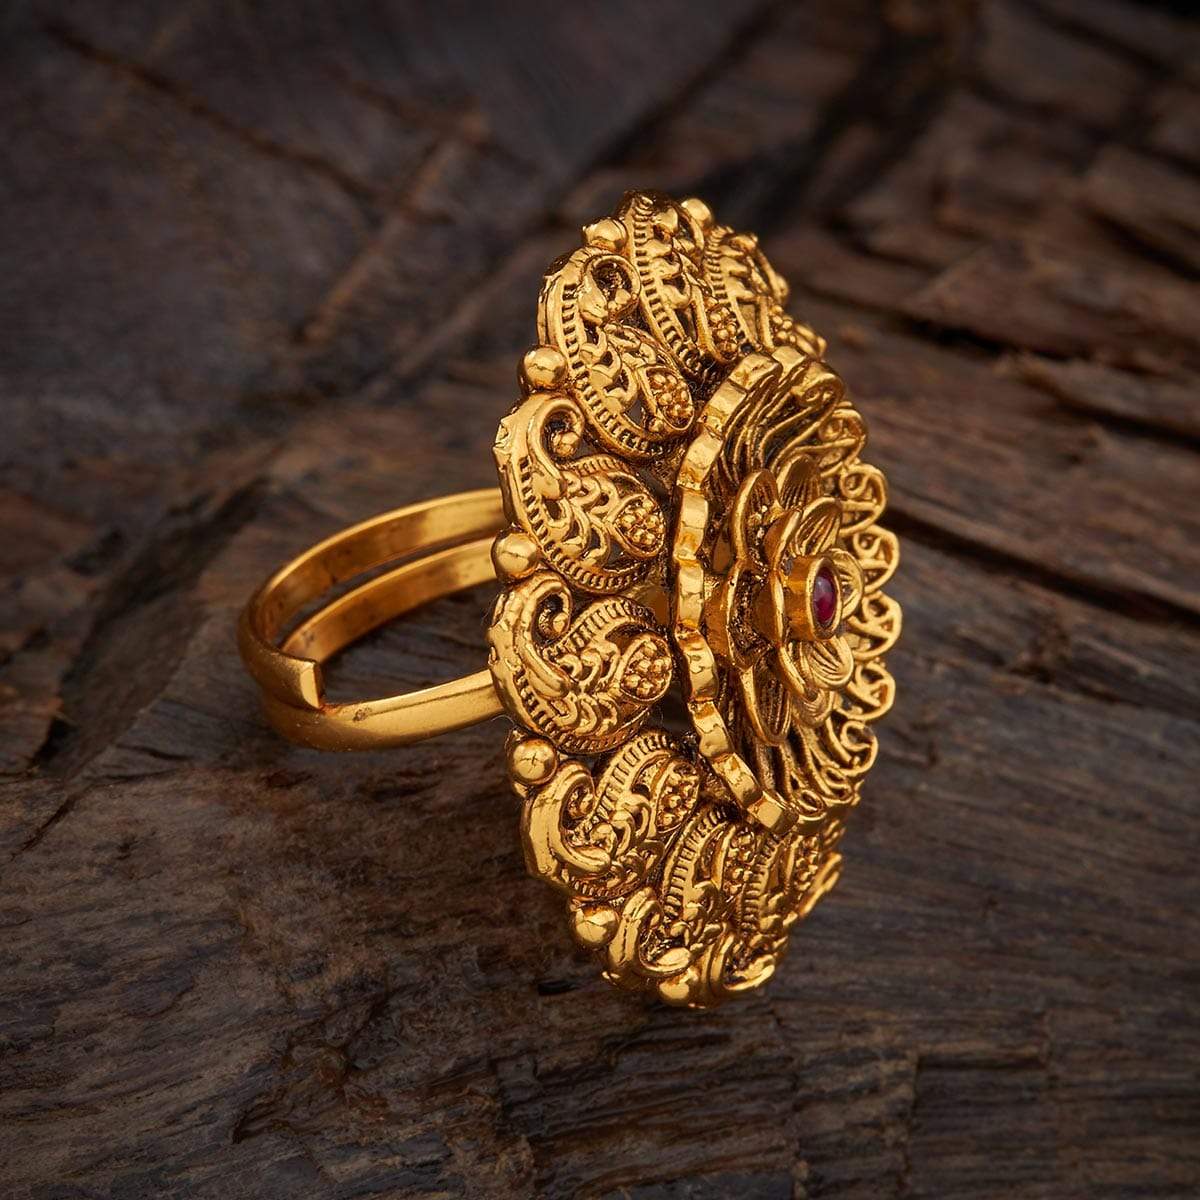 Vintage Leaf Patterned Gold Wedding Band Ring, Size 8 1/2